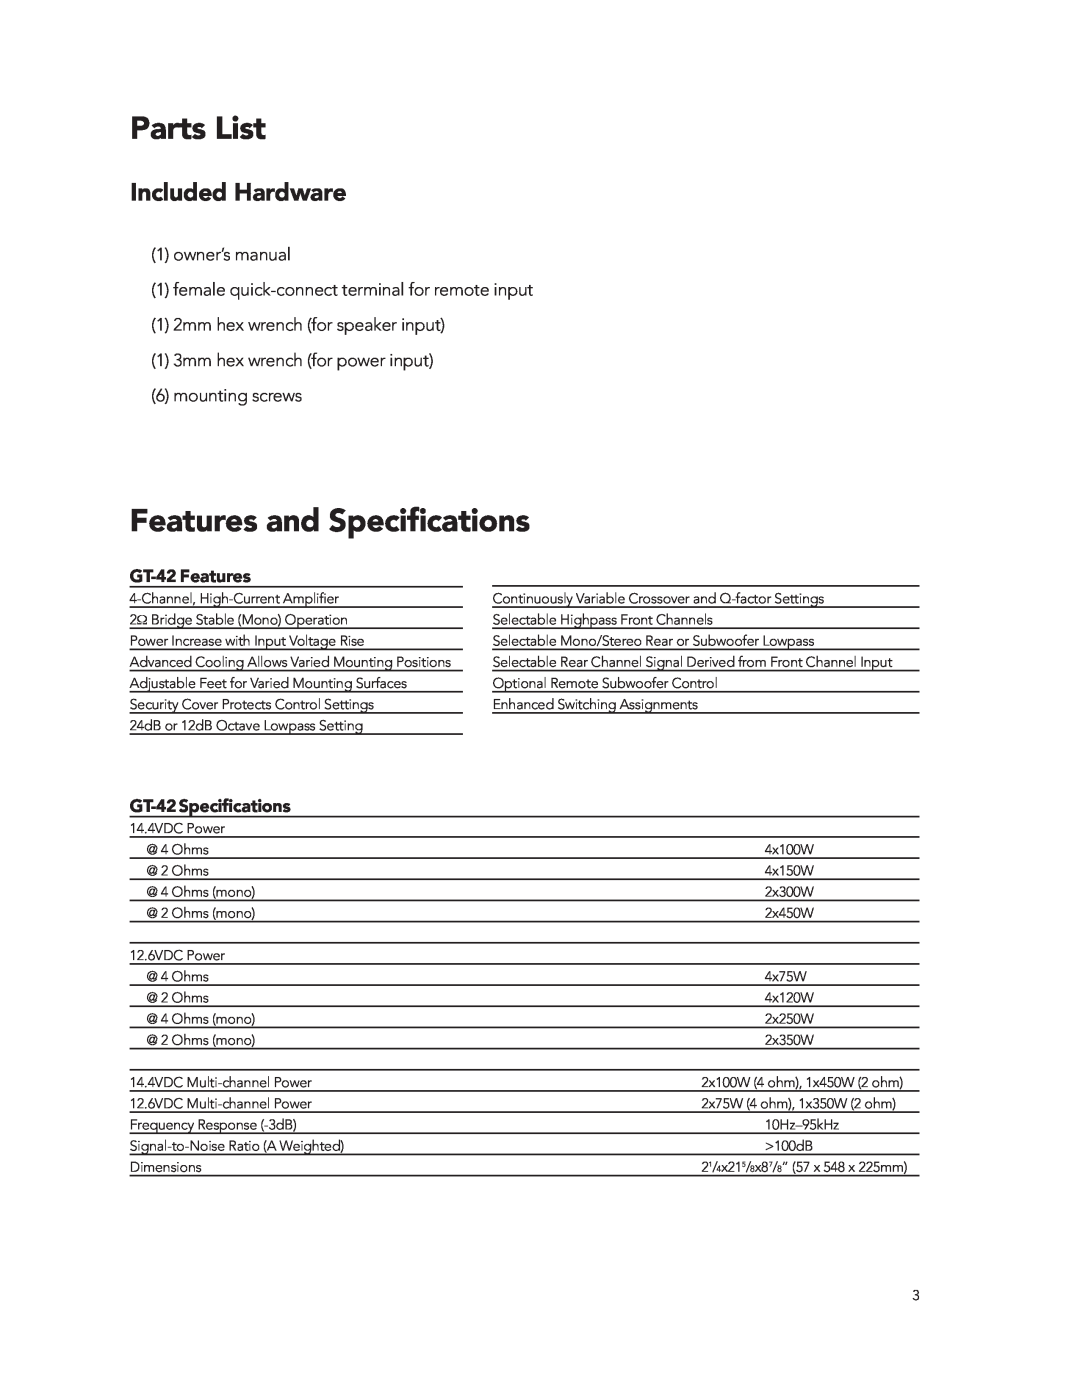 Boston Acoustics manual Parts List, Features and Speciﬁcations, GT-42Features, GT-42Speciﬁcations, Included Hardware 